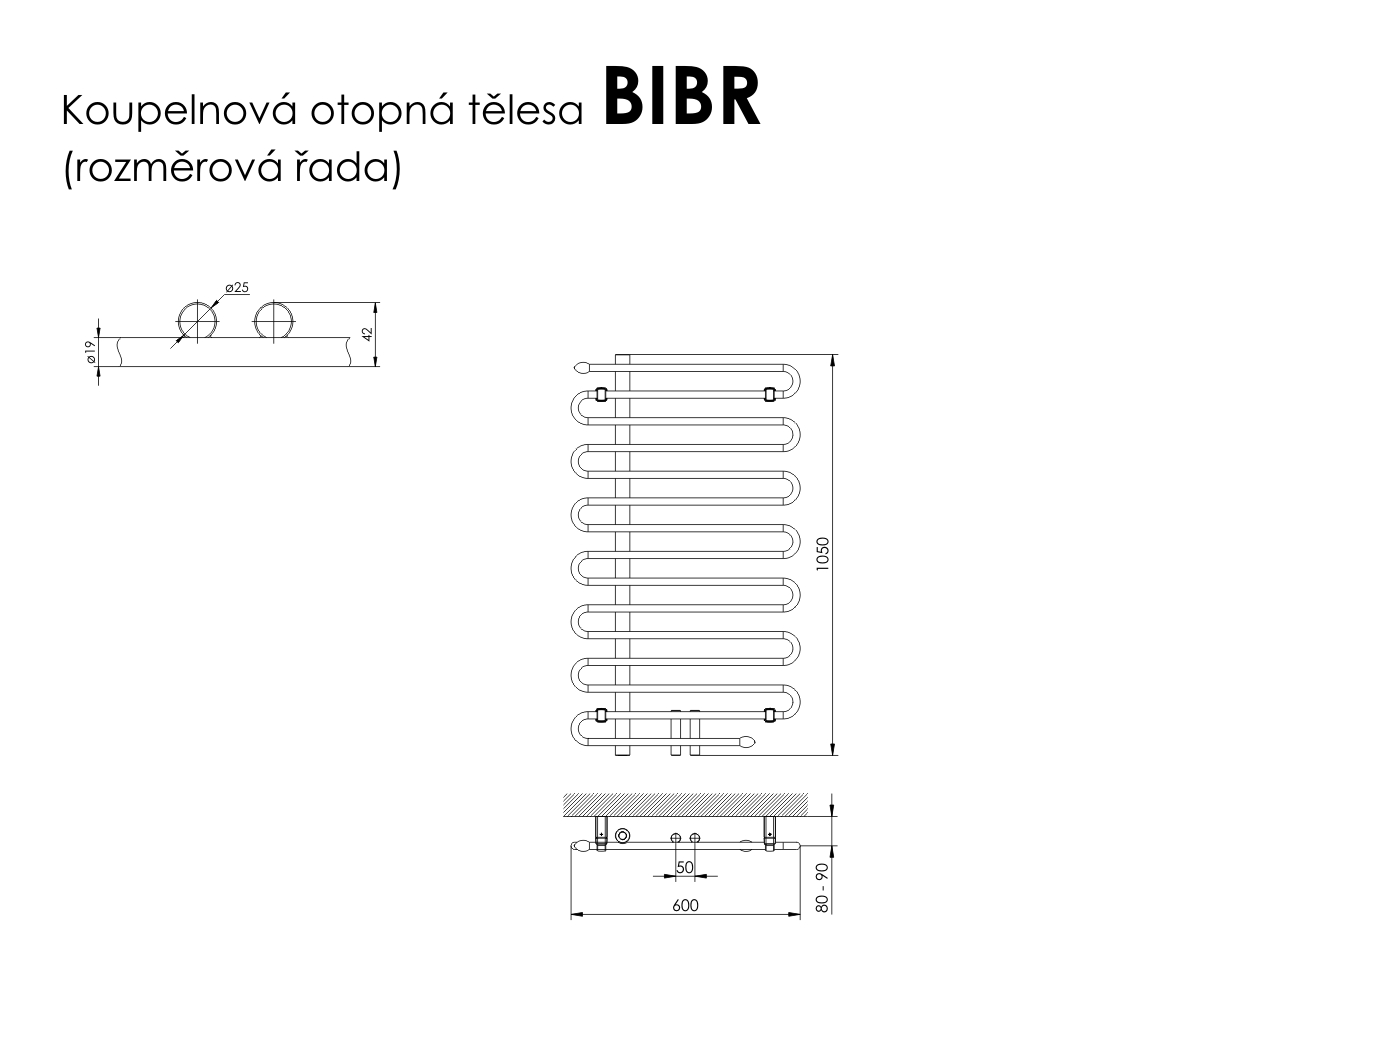 Rozměry radiátoru BIBR